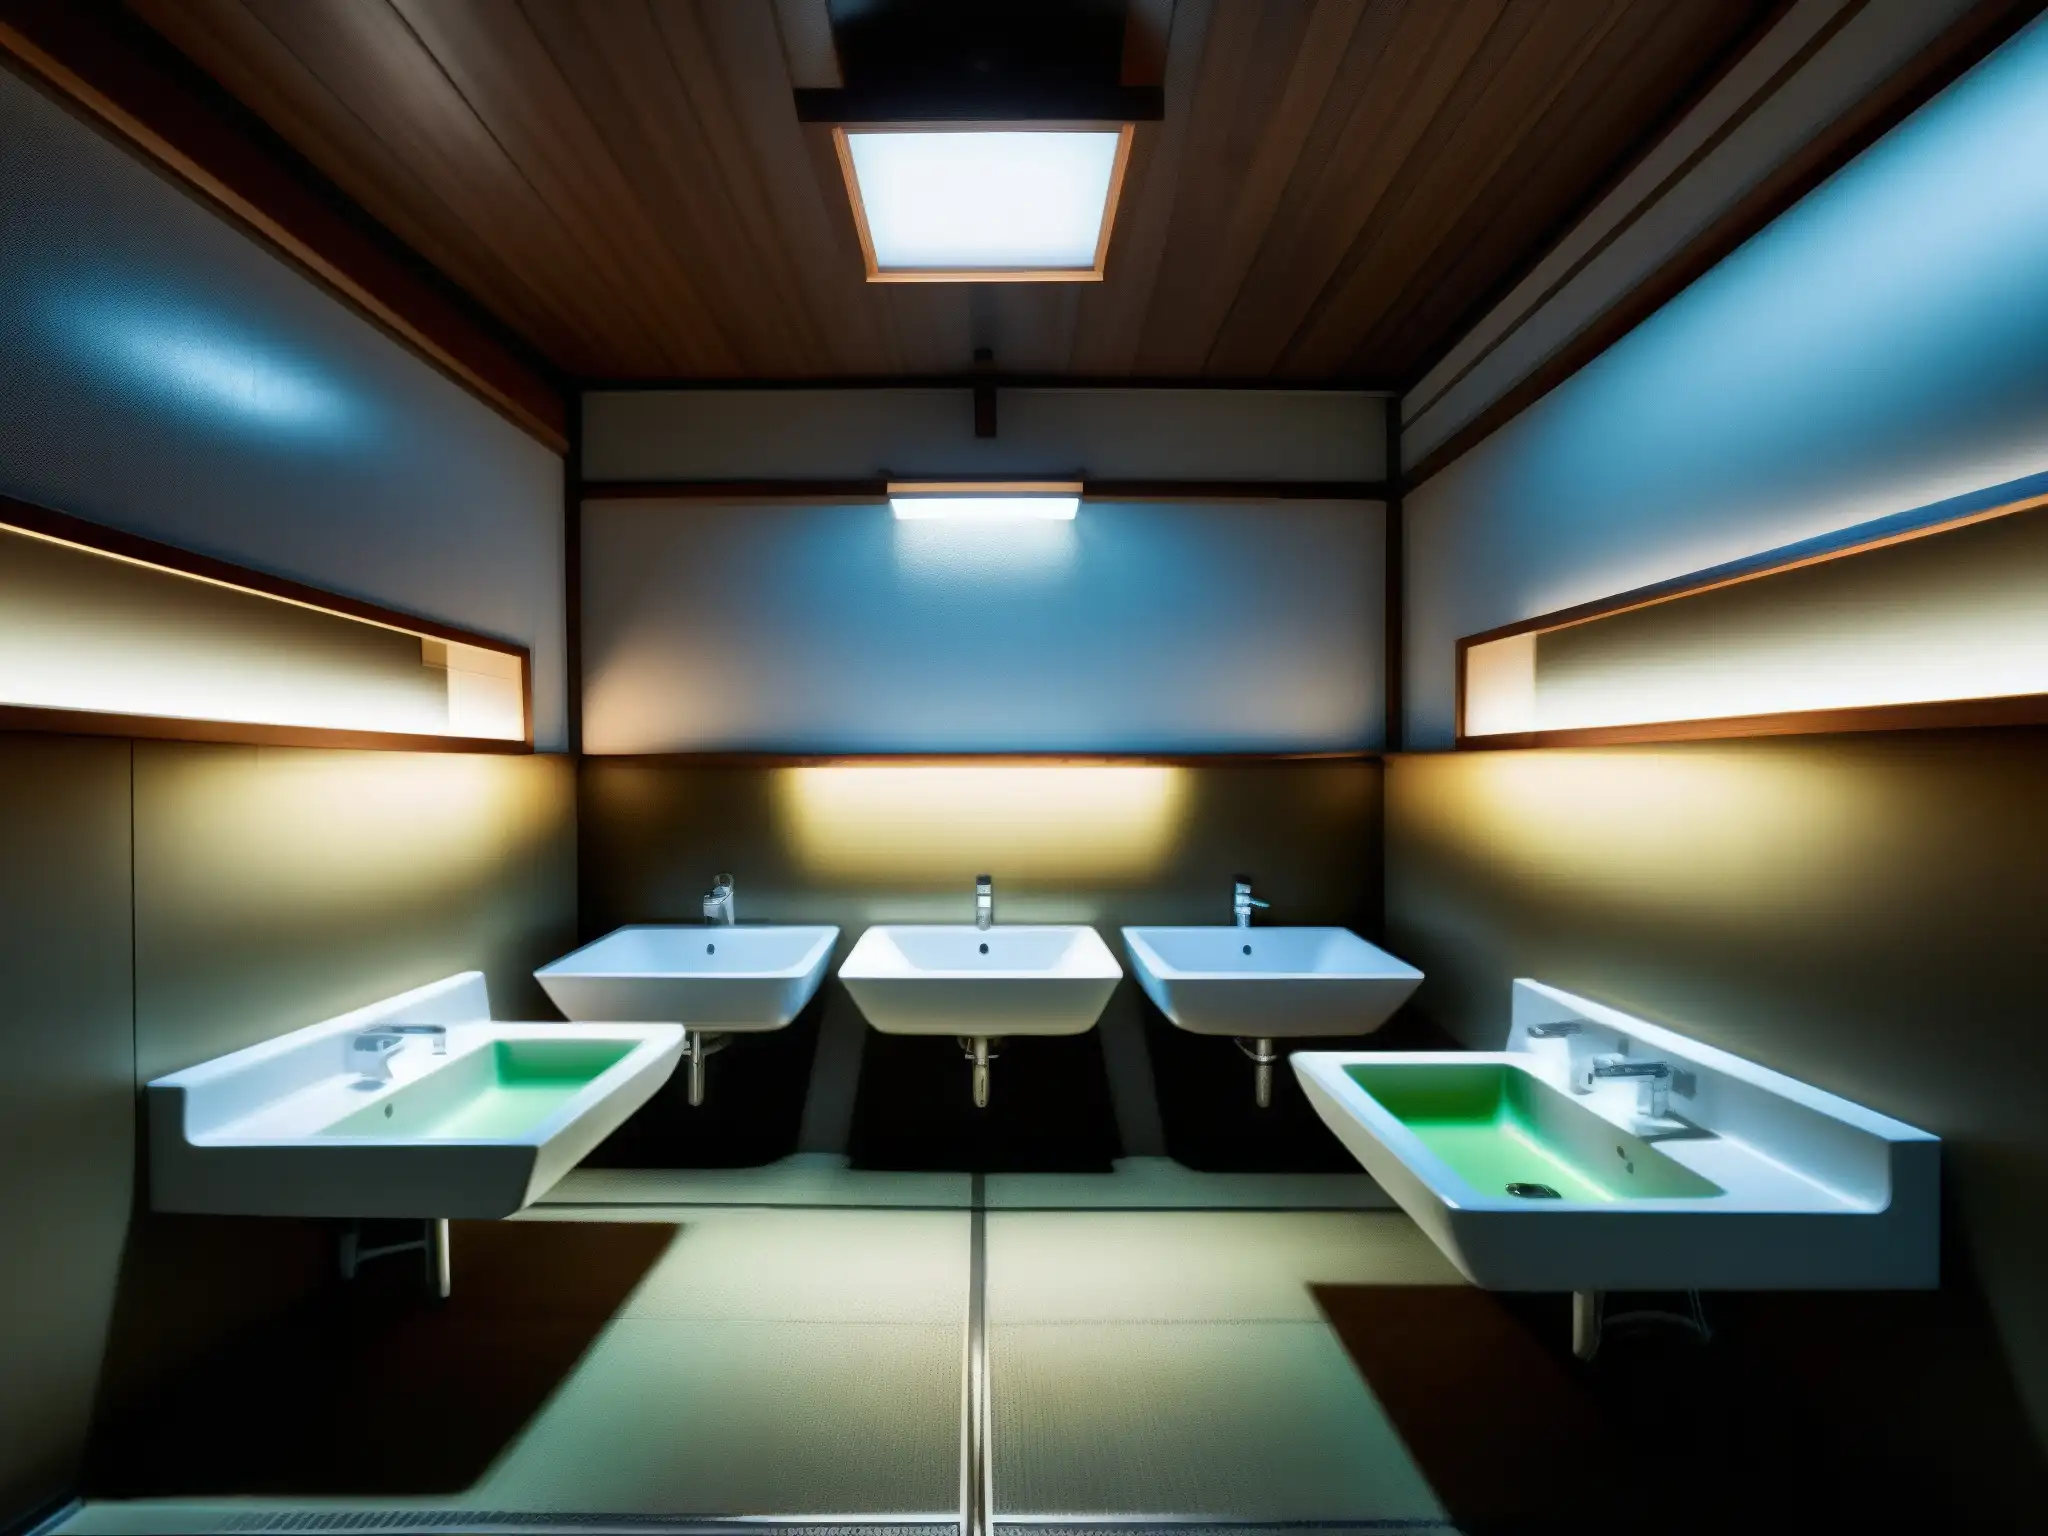 Un baño público en Japón con arquitectura tradicional, lavabos antiguos y luces fluorescentes parpadeantes